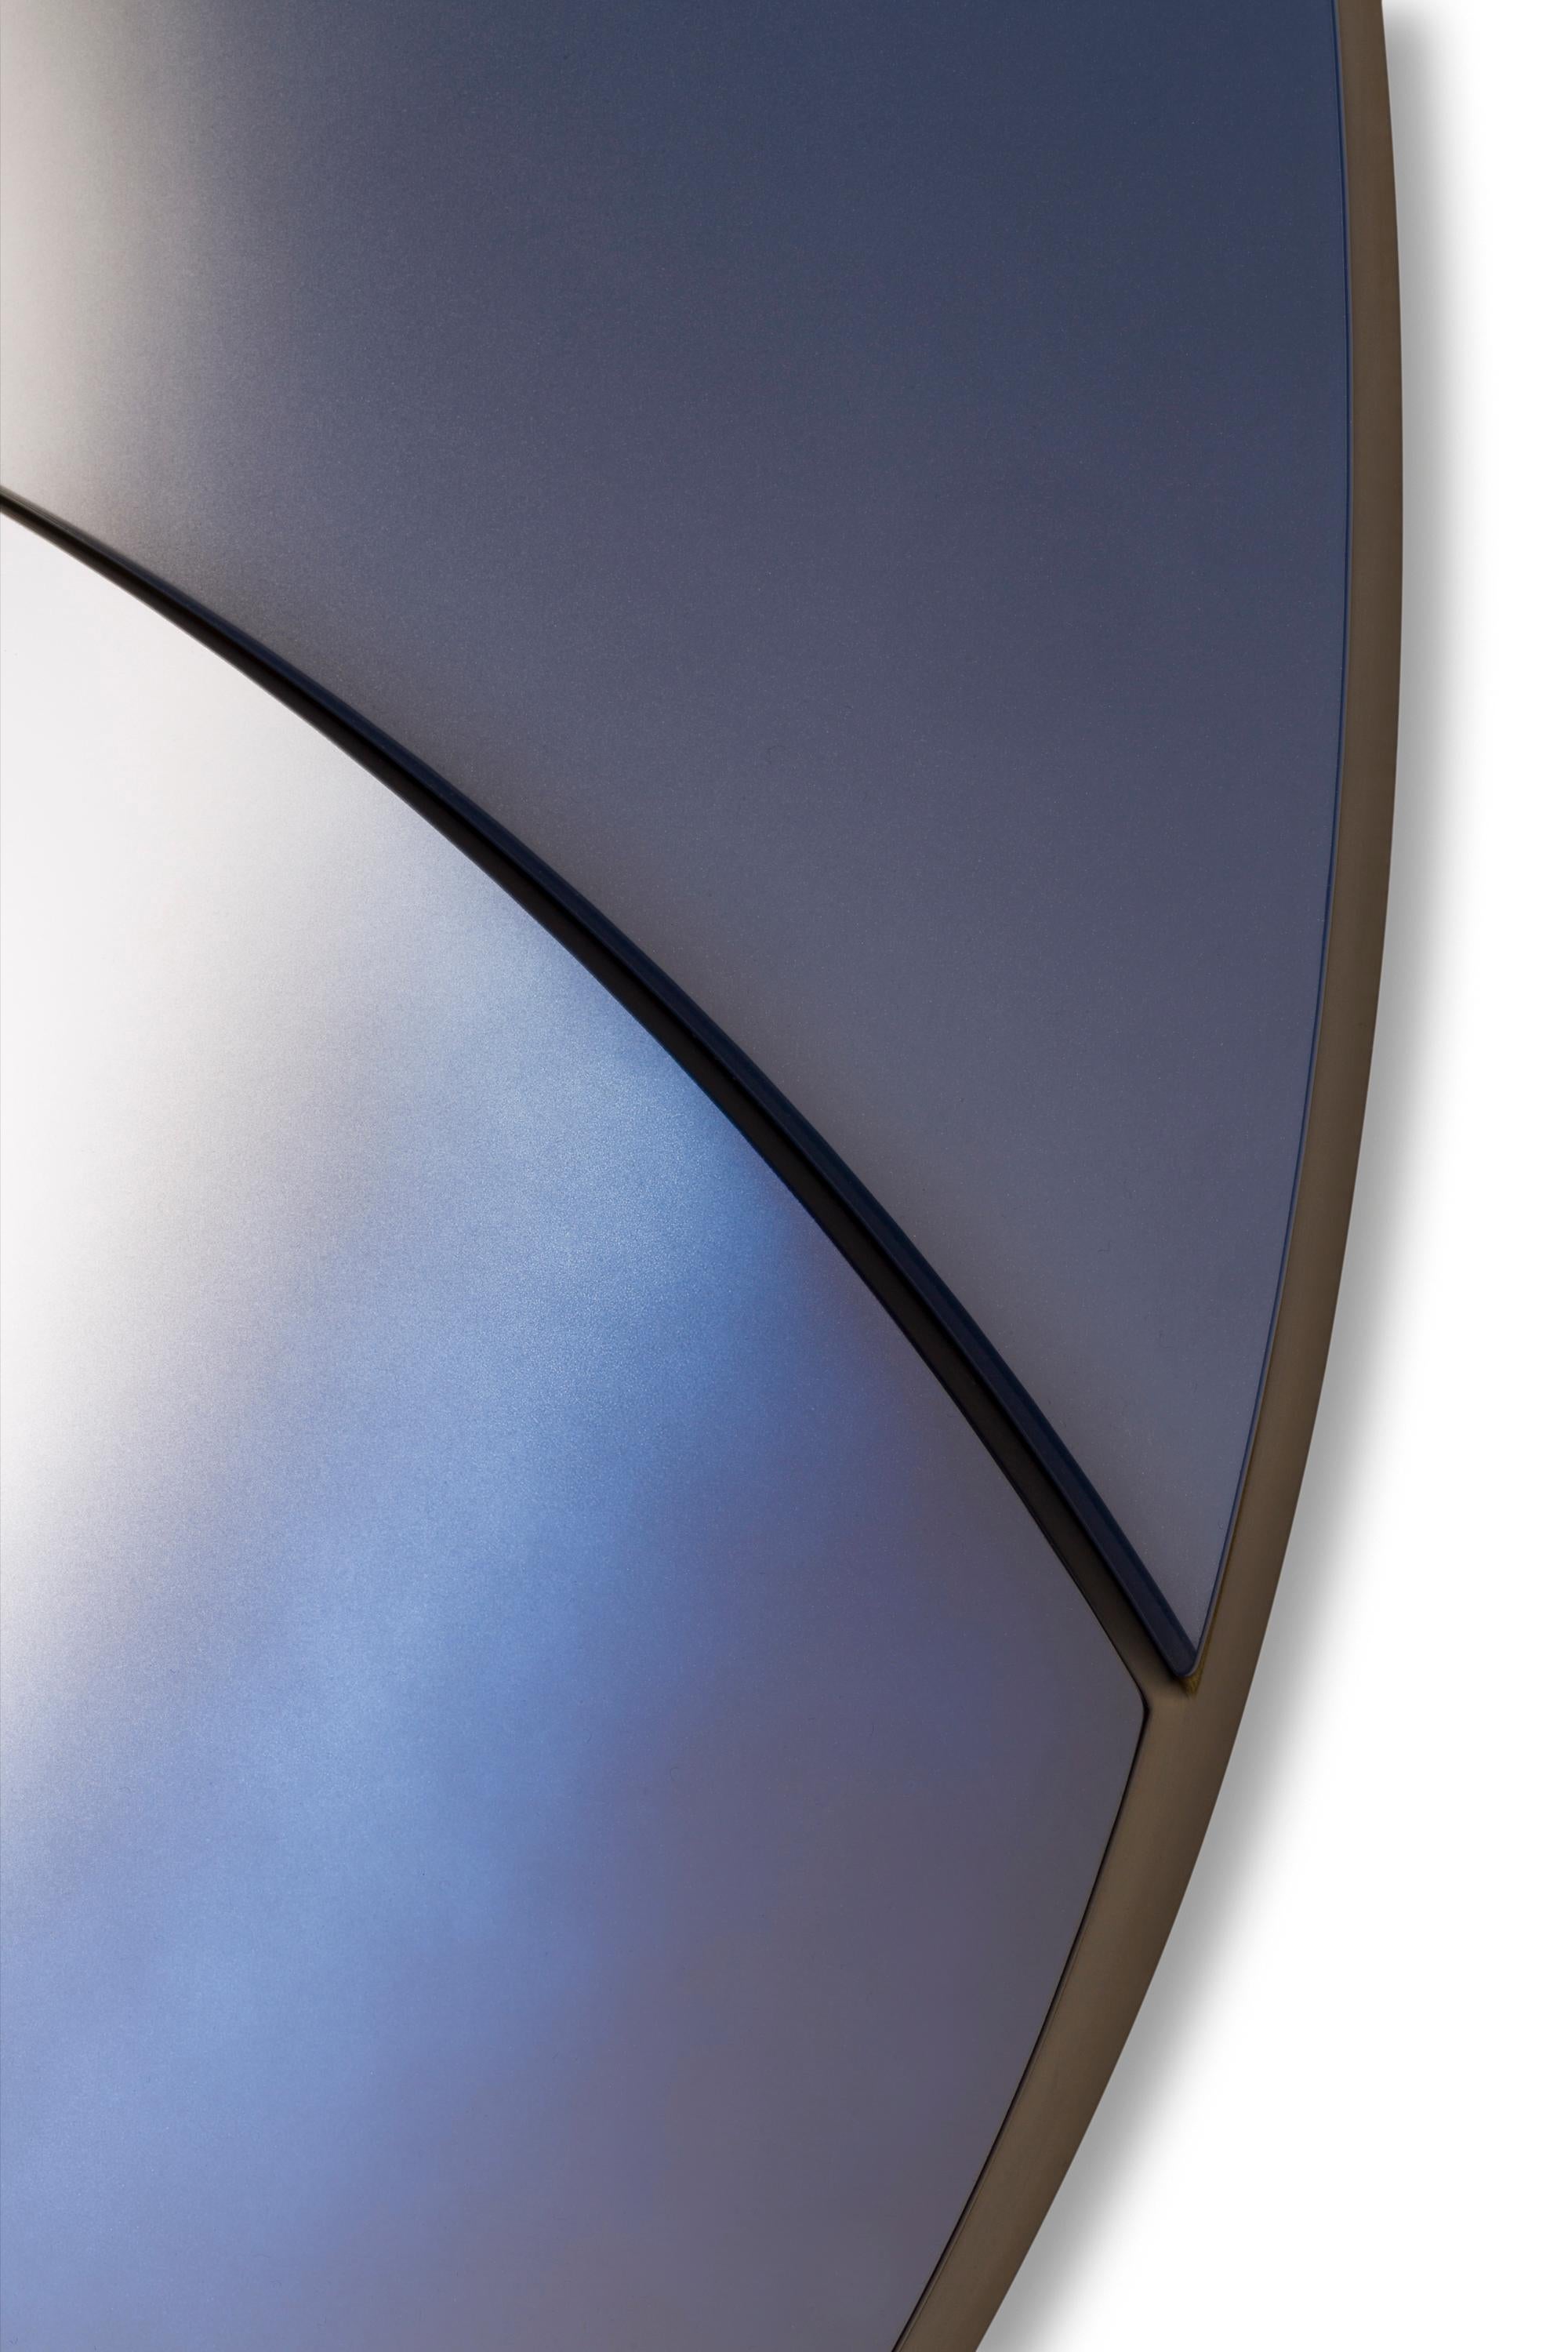 Trio Spiegel in Blautönen - Ovale Form 
Holz gespiegeltes Glas
Maße: 47,24